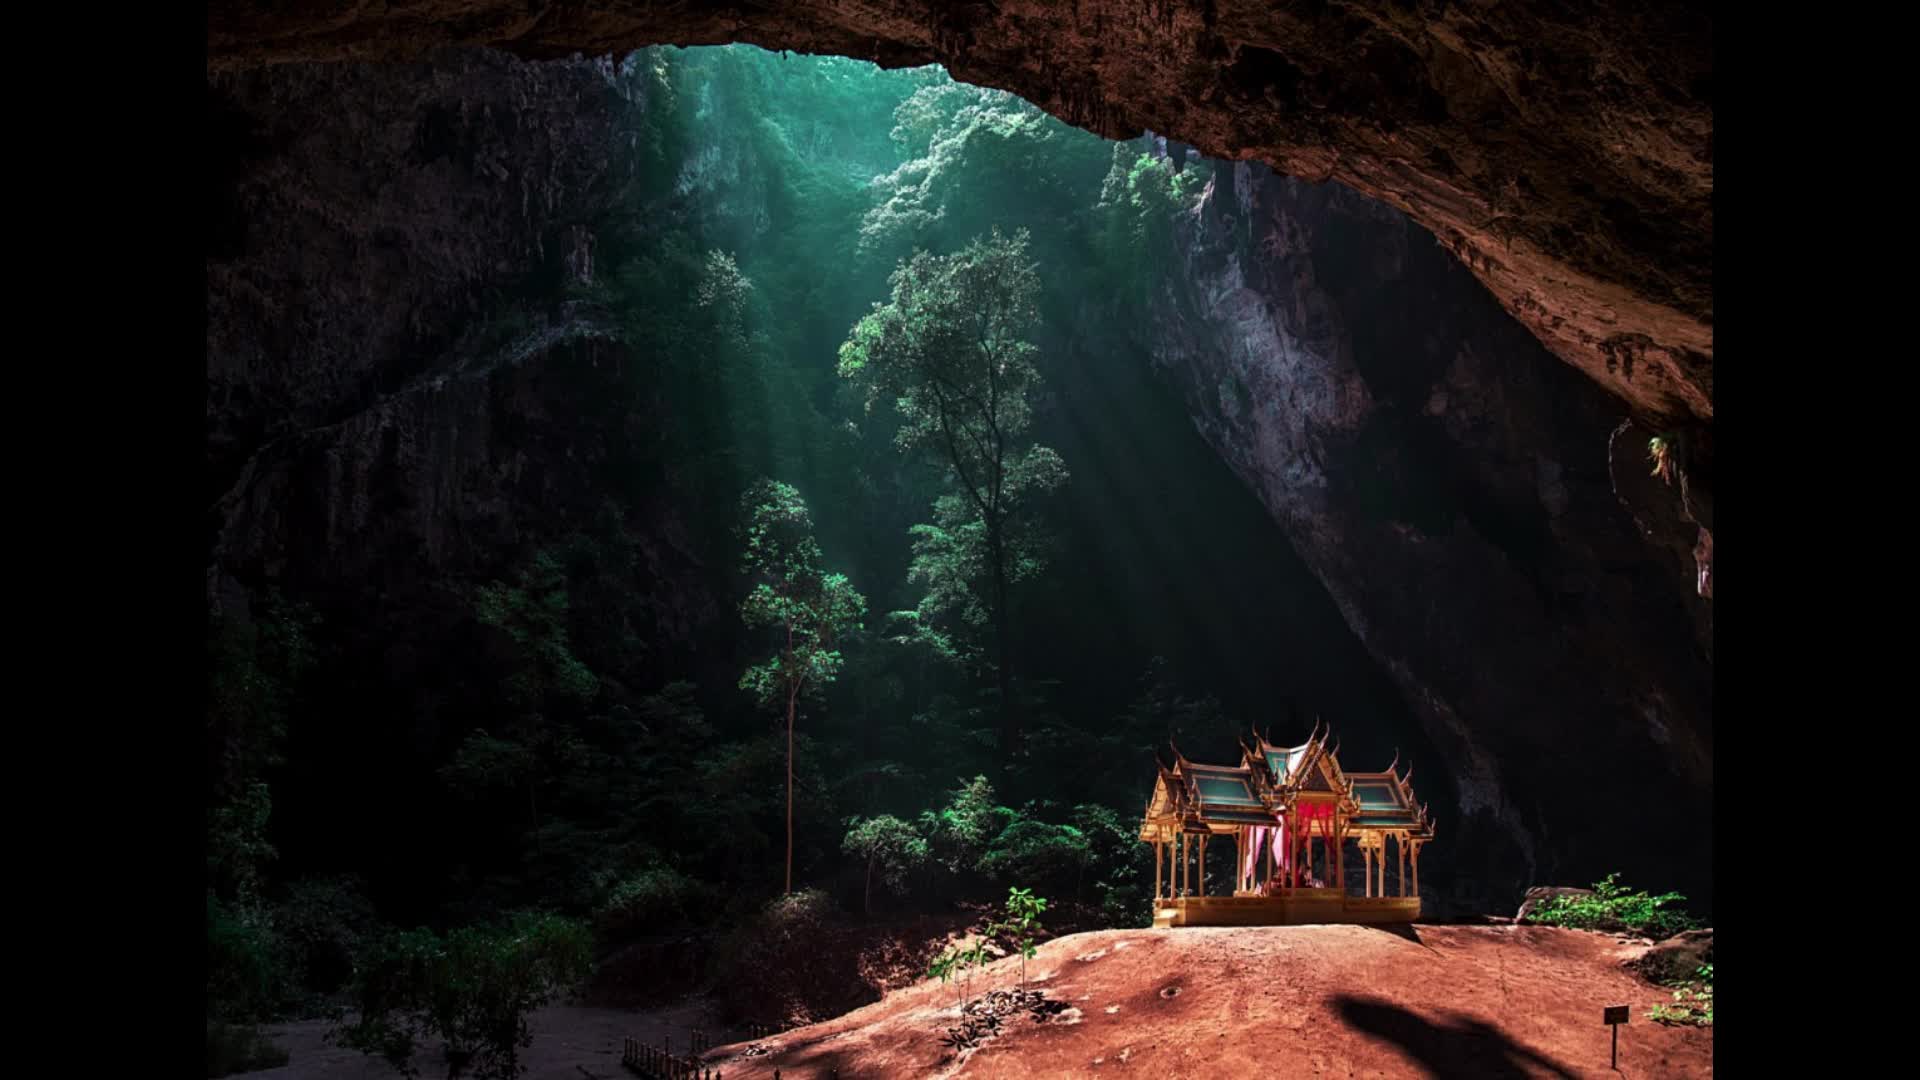 Места с уникальной природой. Пещера Прайя Накхон Таиланд. Таиланд. Пещера Phraya Nakorn. Прая након (Phraya Nakhon), Таиланд. Сяочжай Тянькэн.